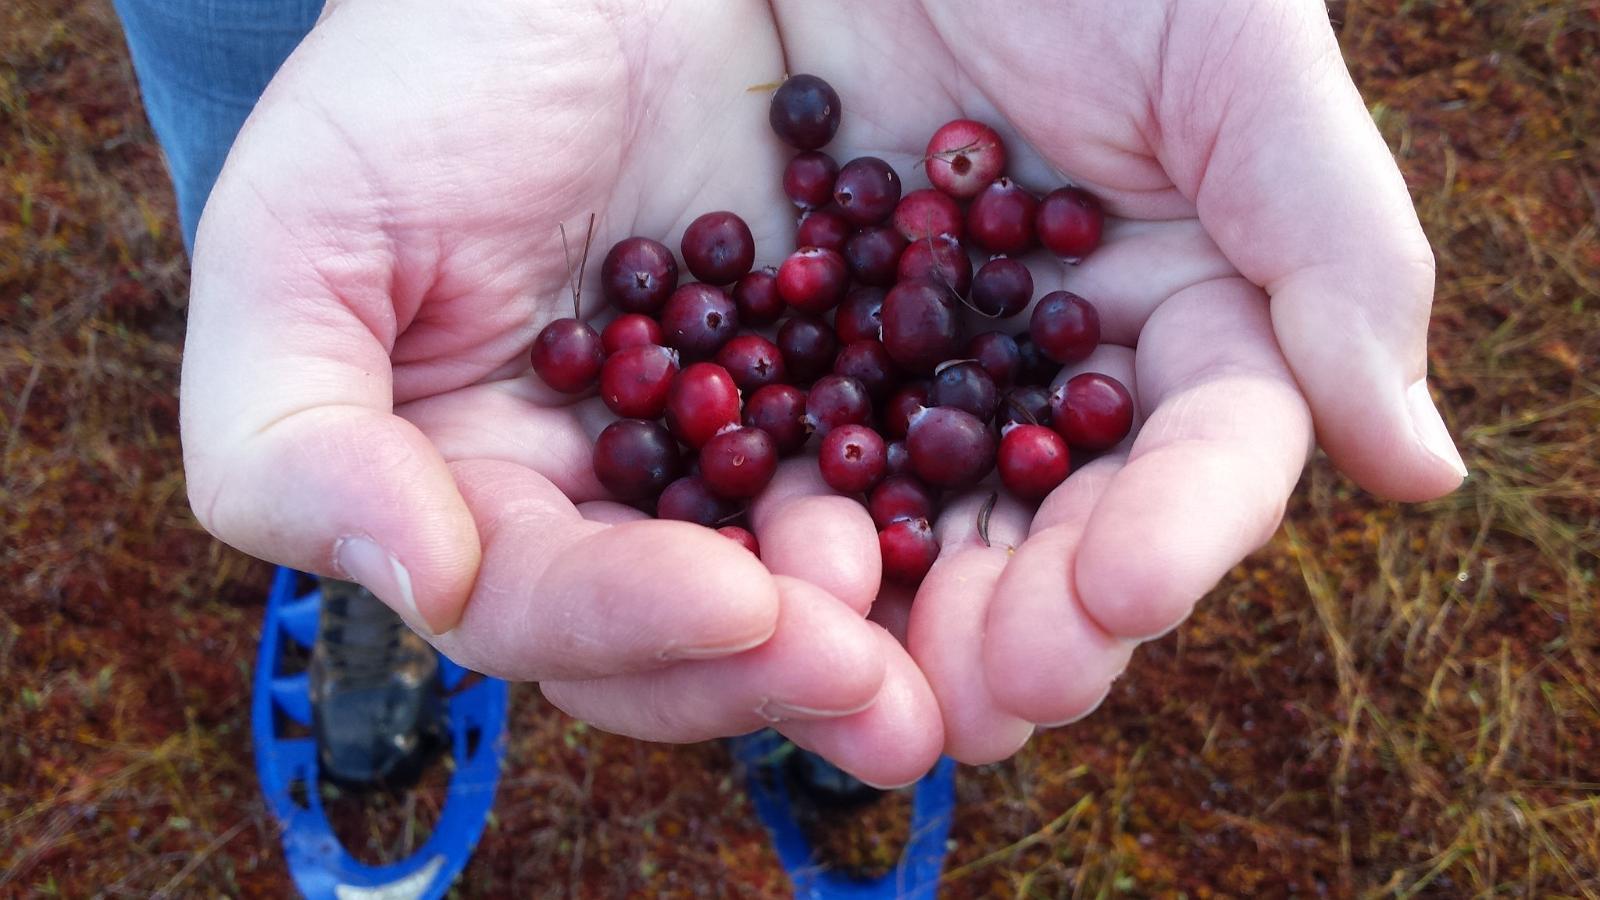 Cranberry hike in Soomaa bogs (soomaa.com).